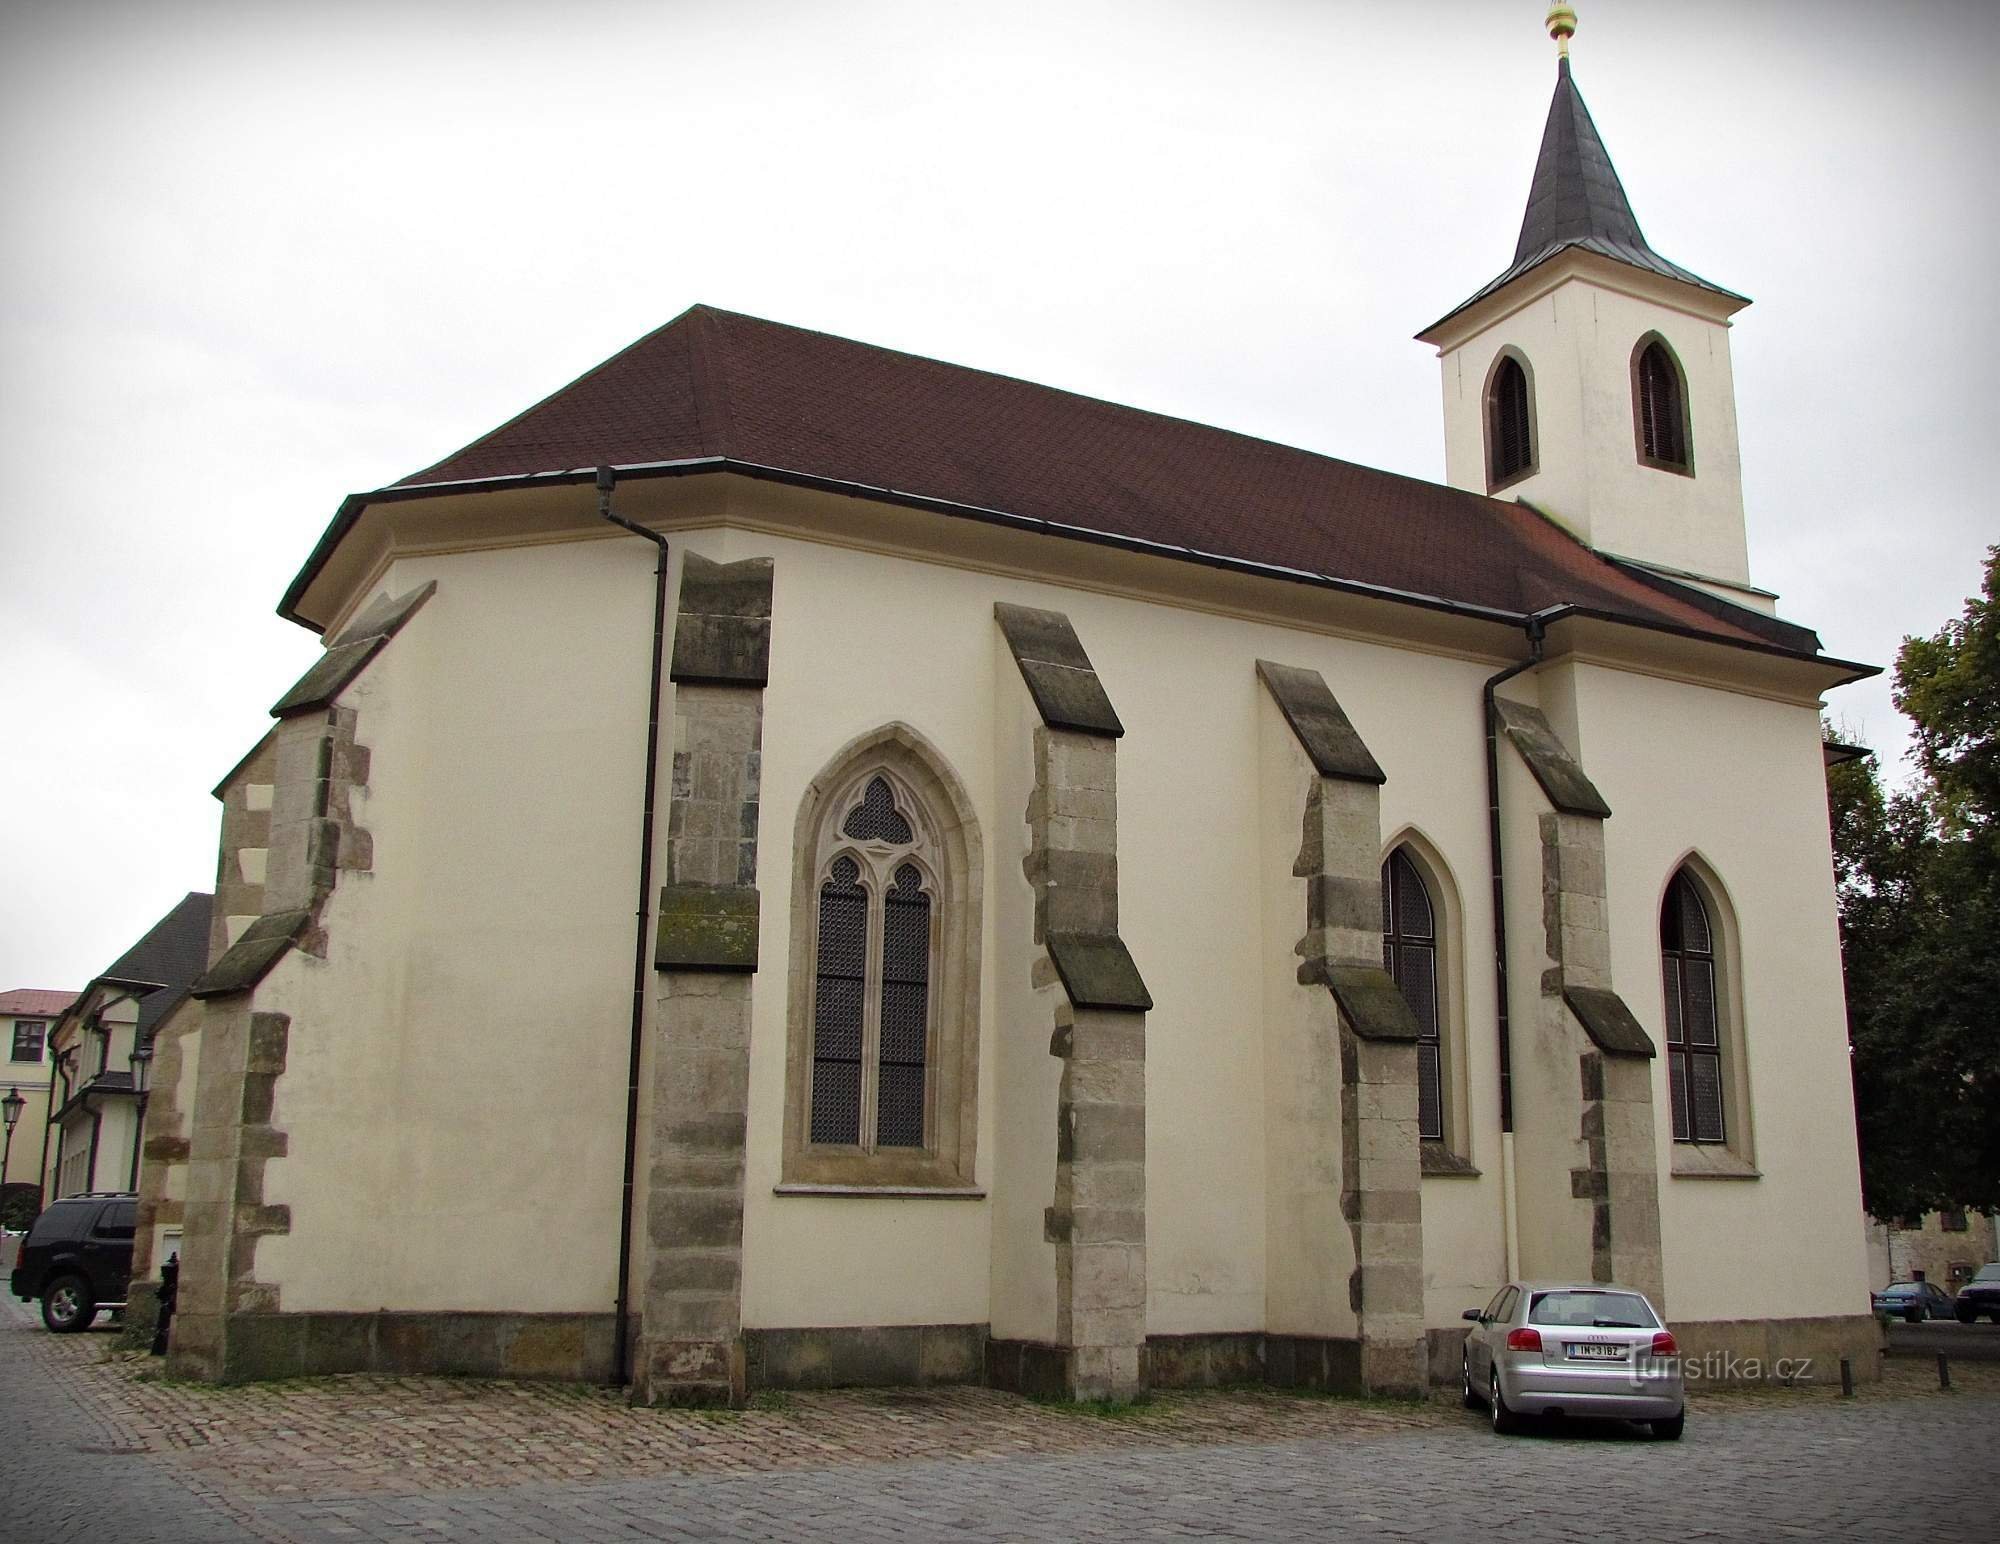 Litomyšl - Biserica Trimiterea Sfinților Apostoli